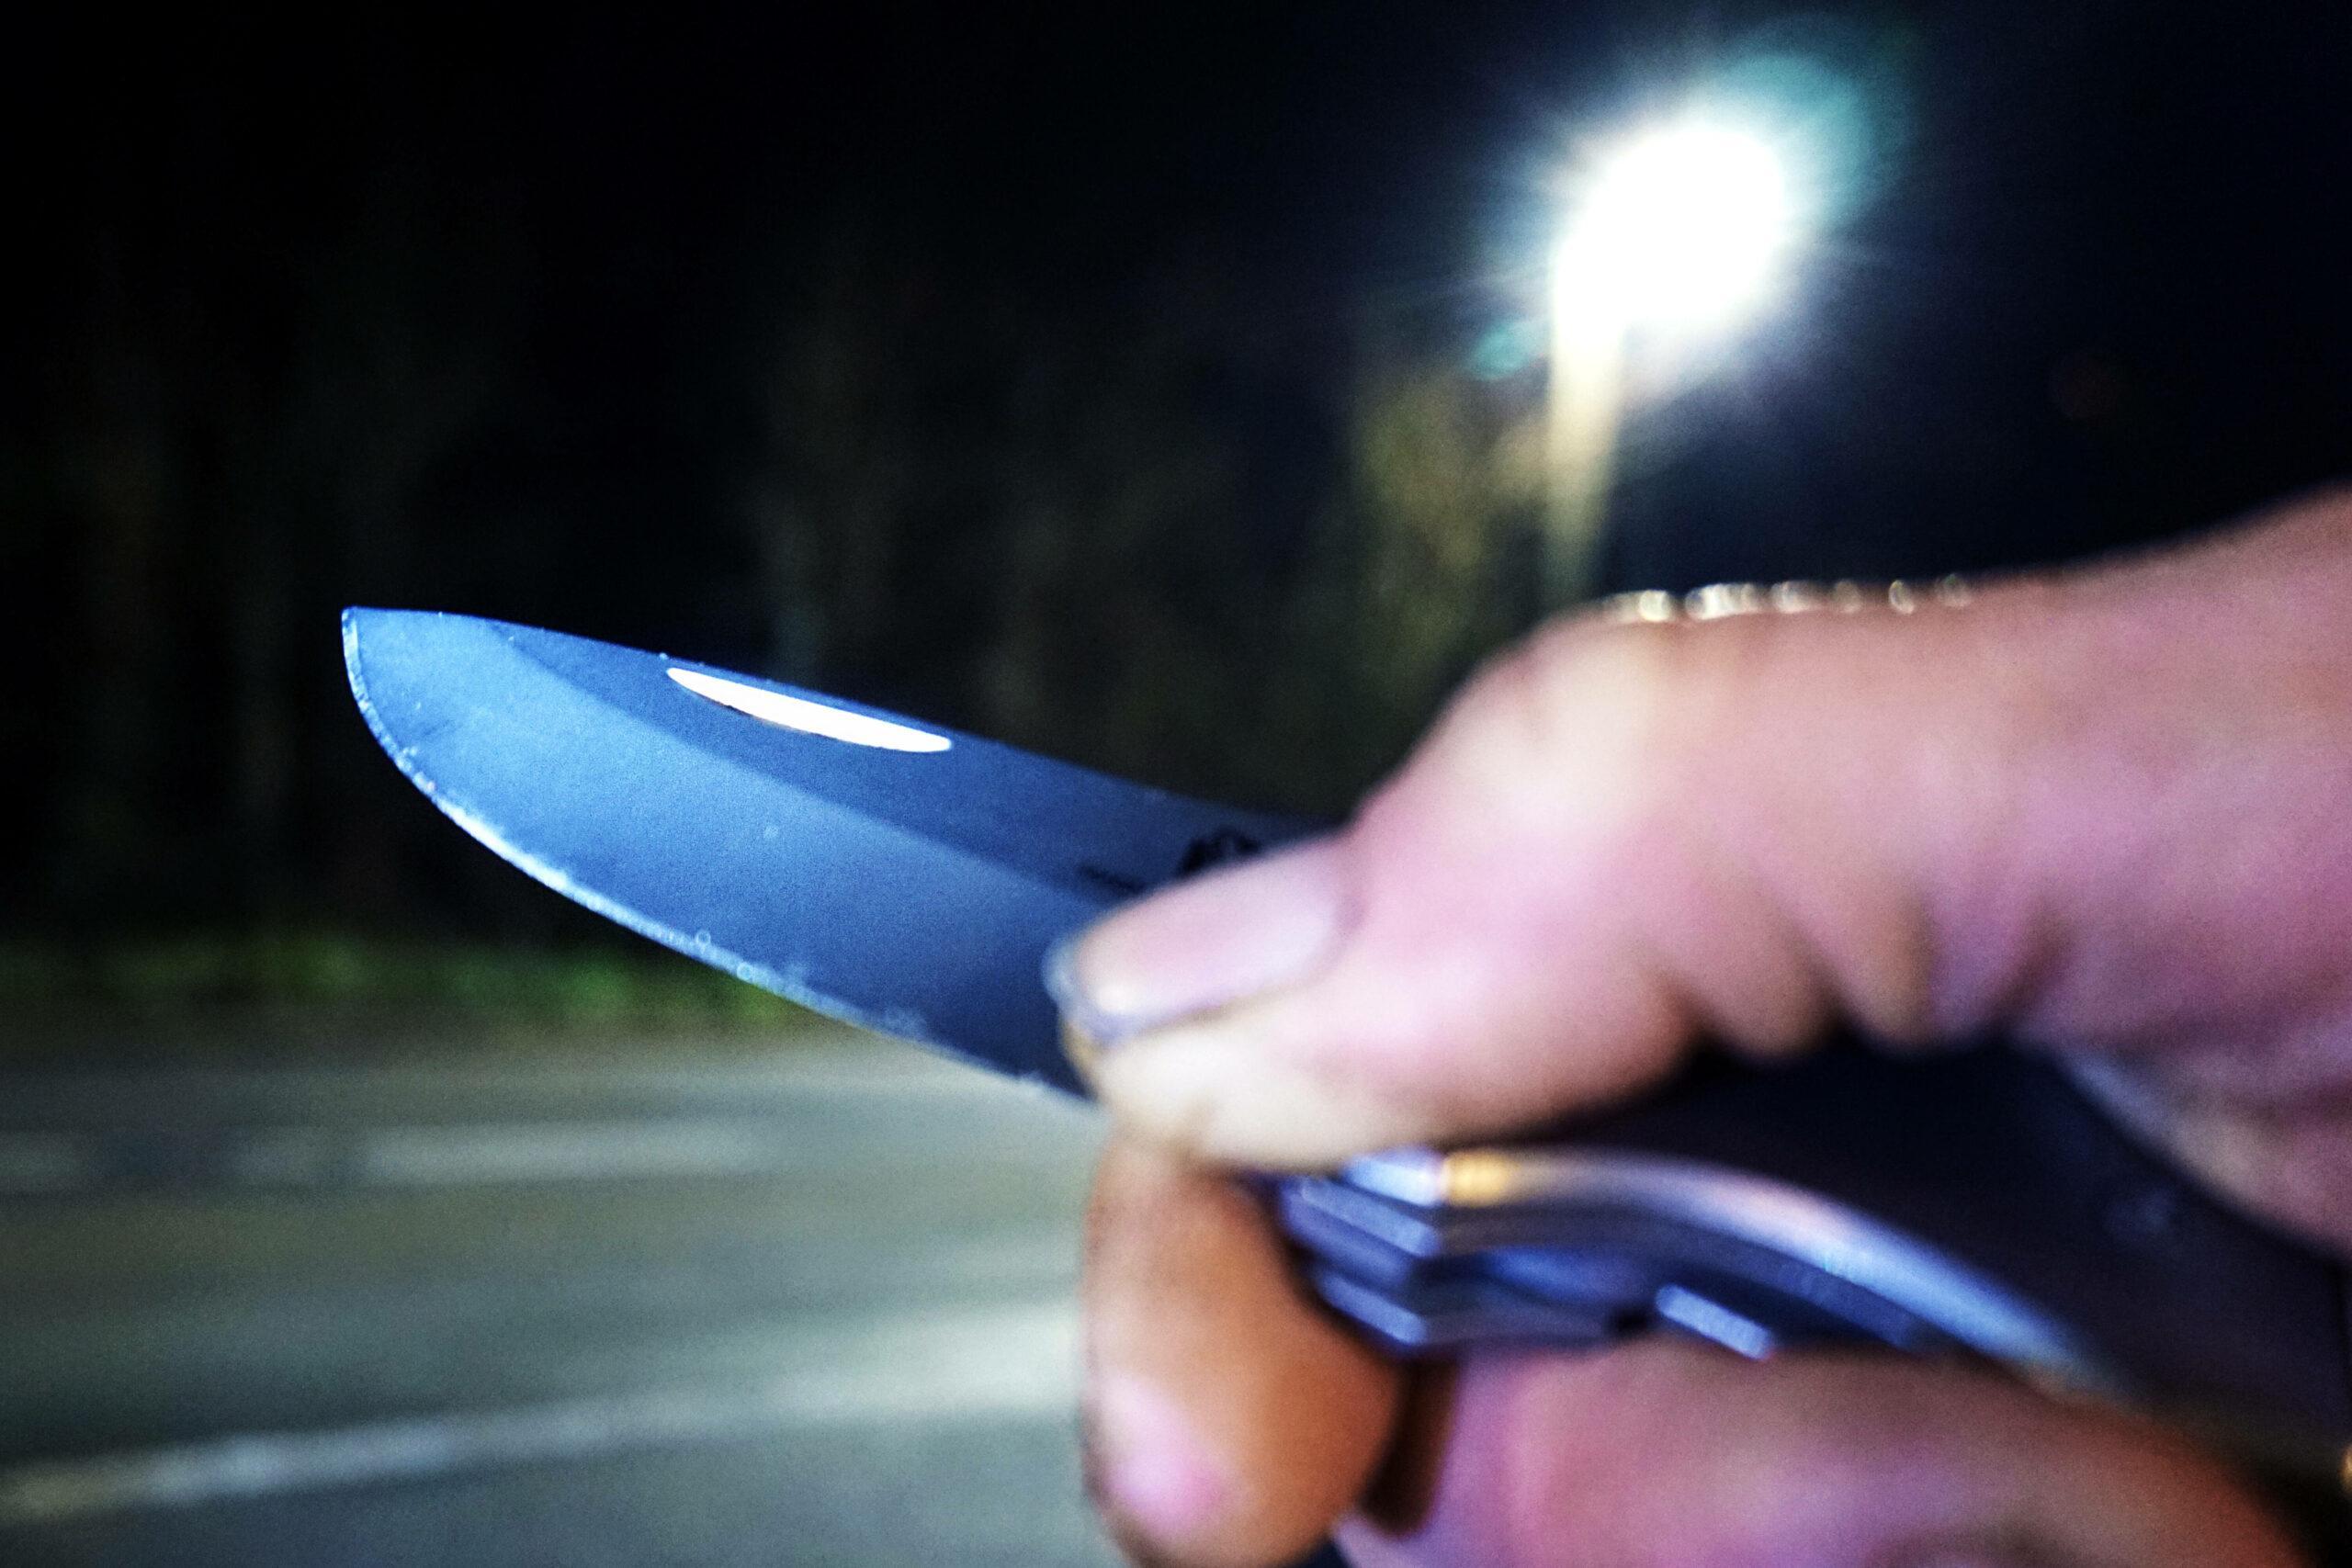 Bei den Übergriffen kommen auch immer mehr Messer zum Einsatz. (Symbolfoto)